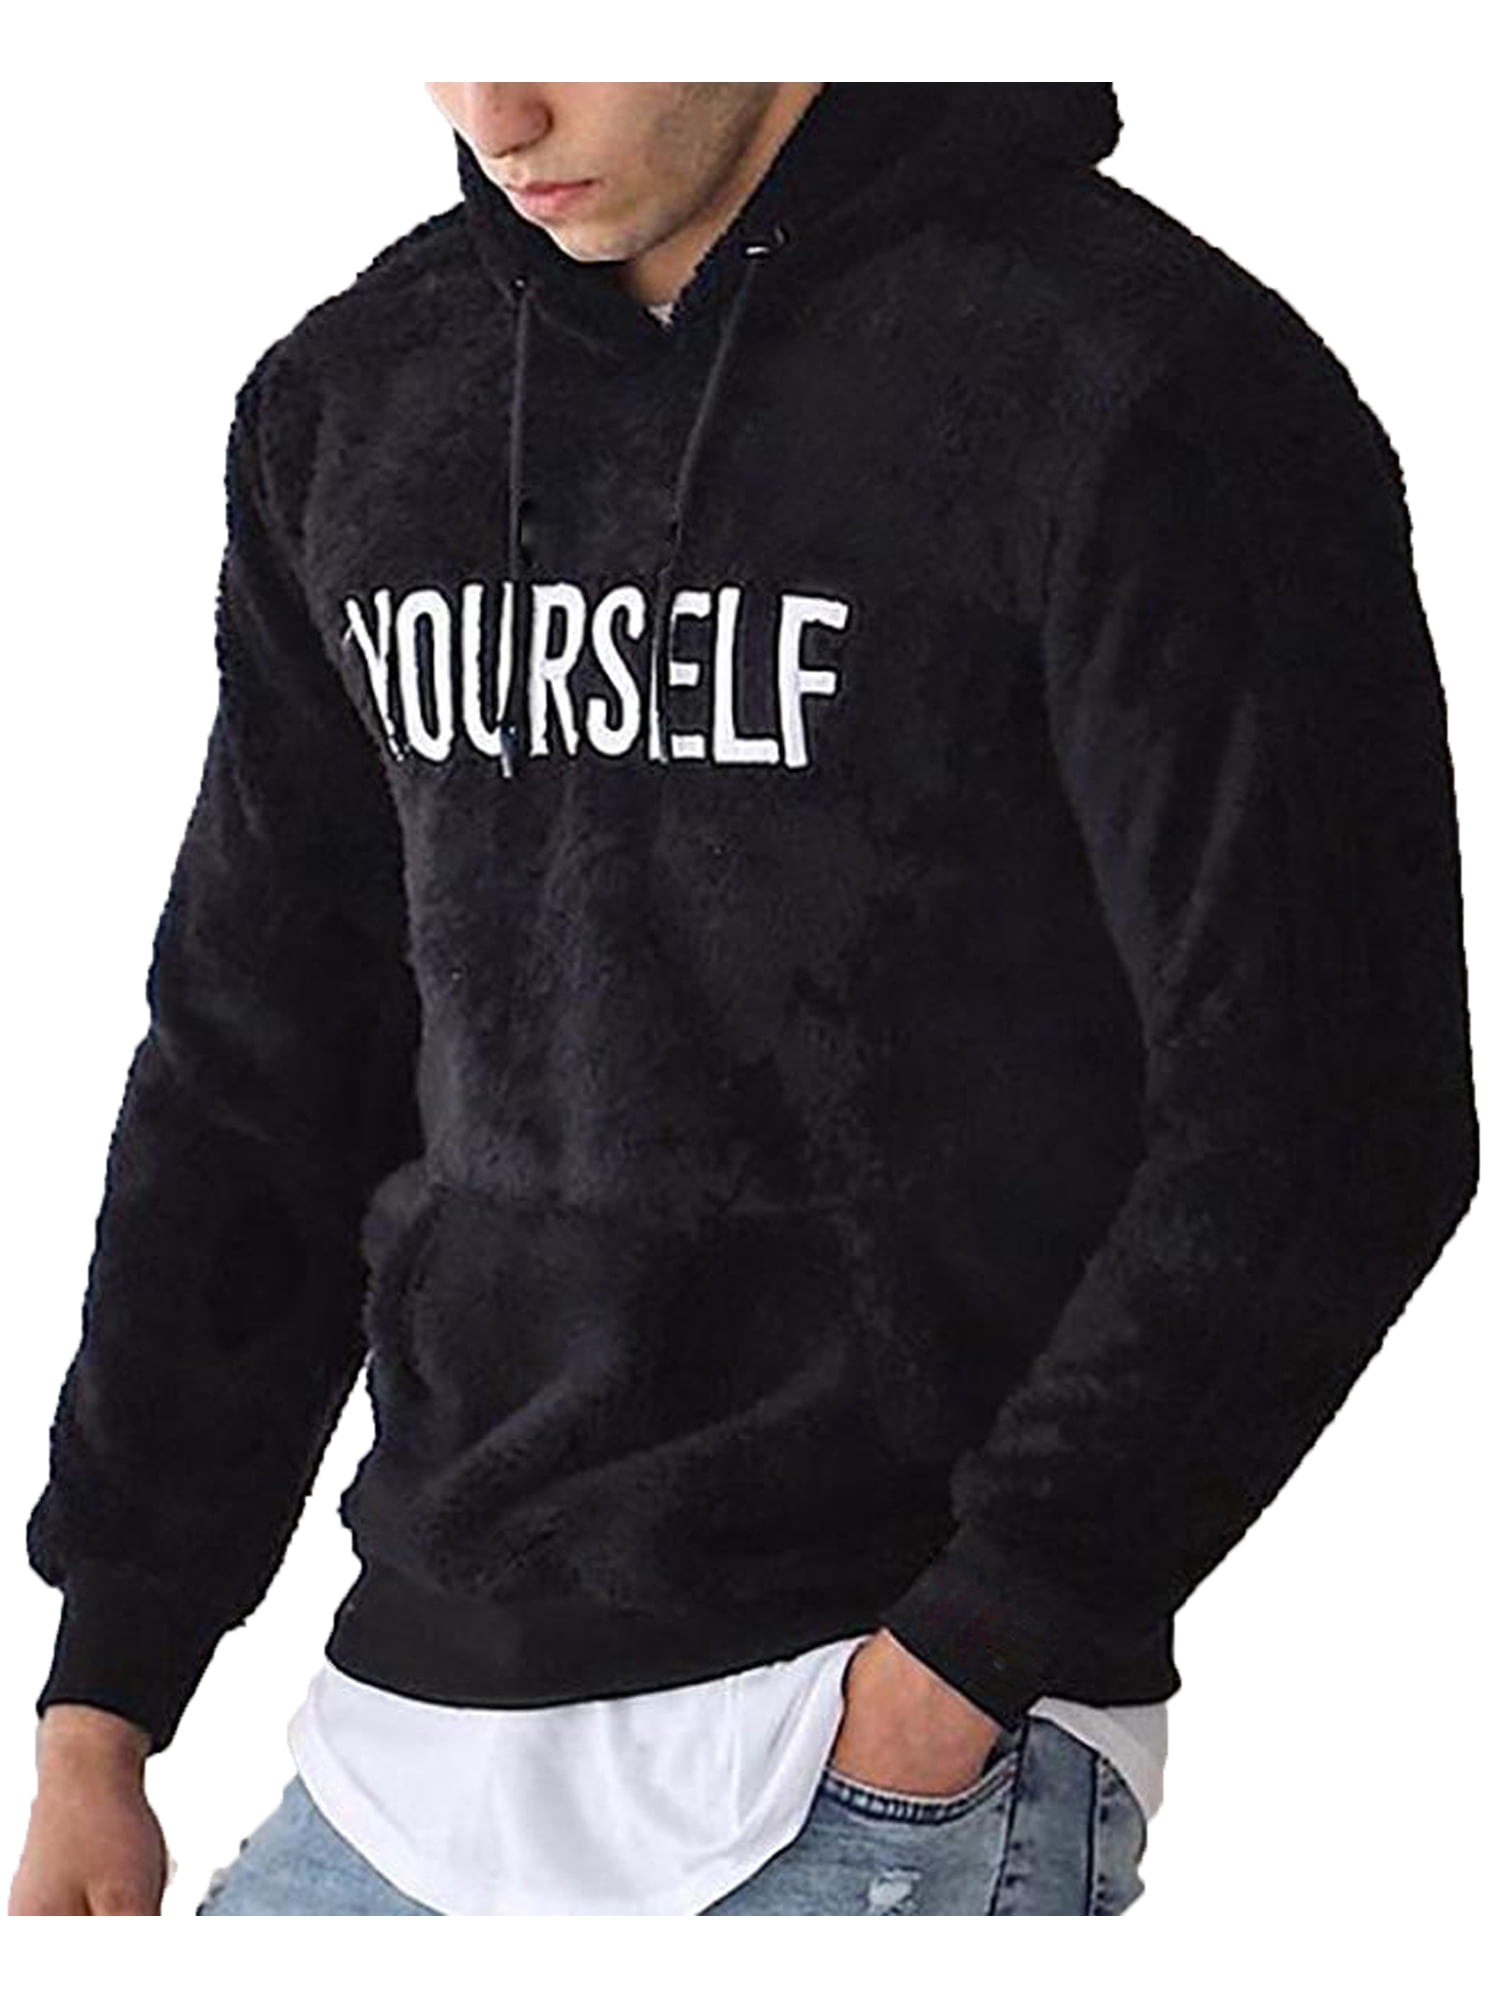 2019 Brand Men Black Hoodies Sweatshirts Hoody Long Sleeved Male